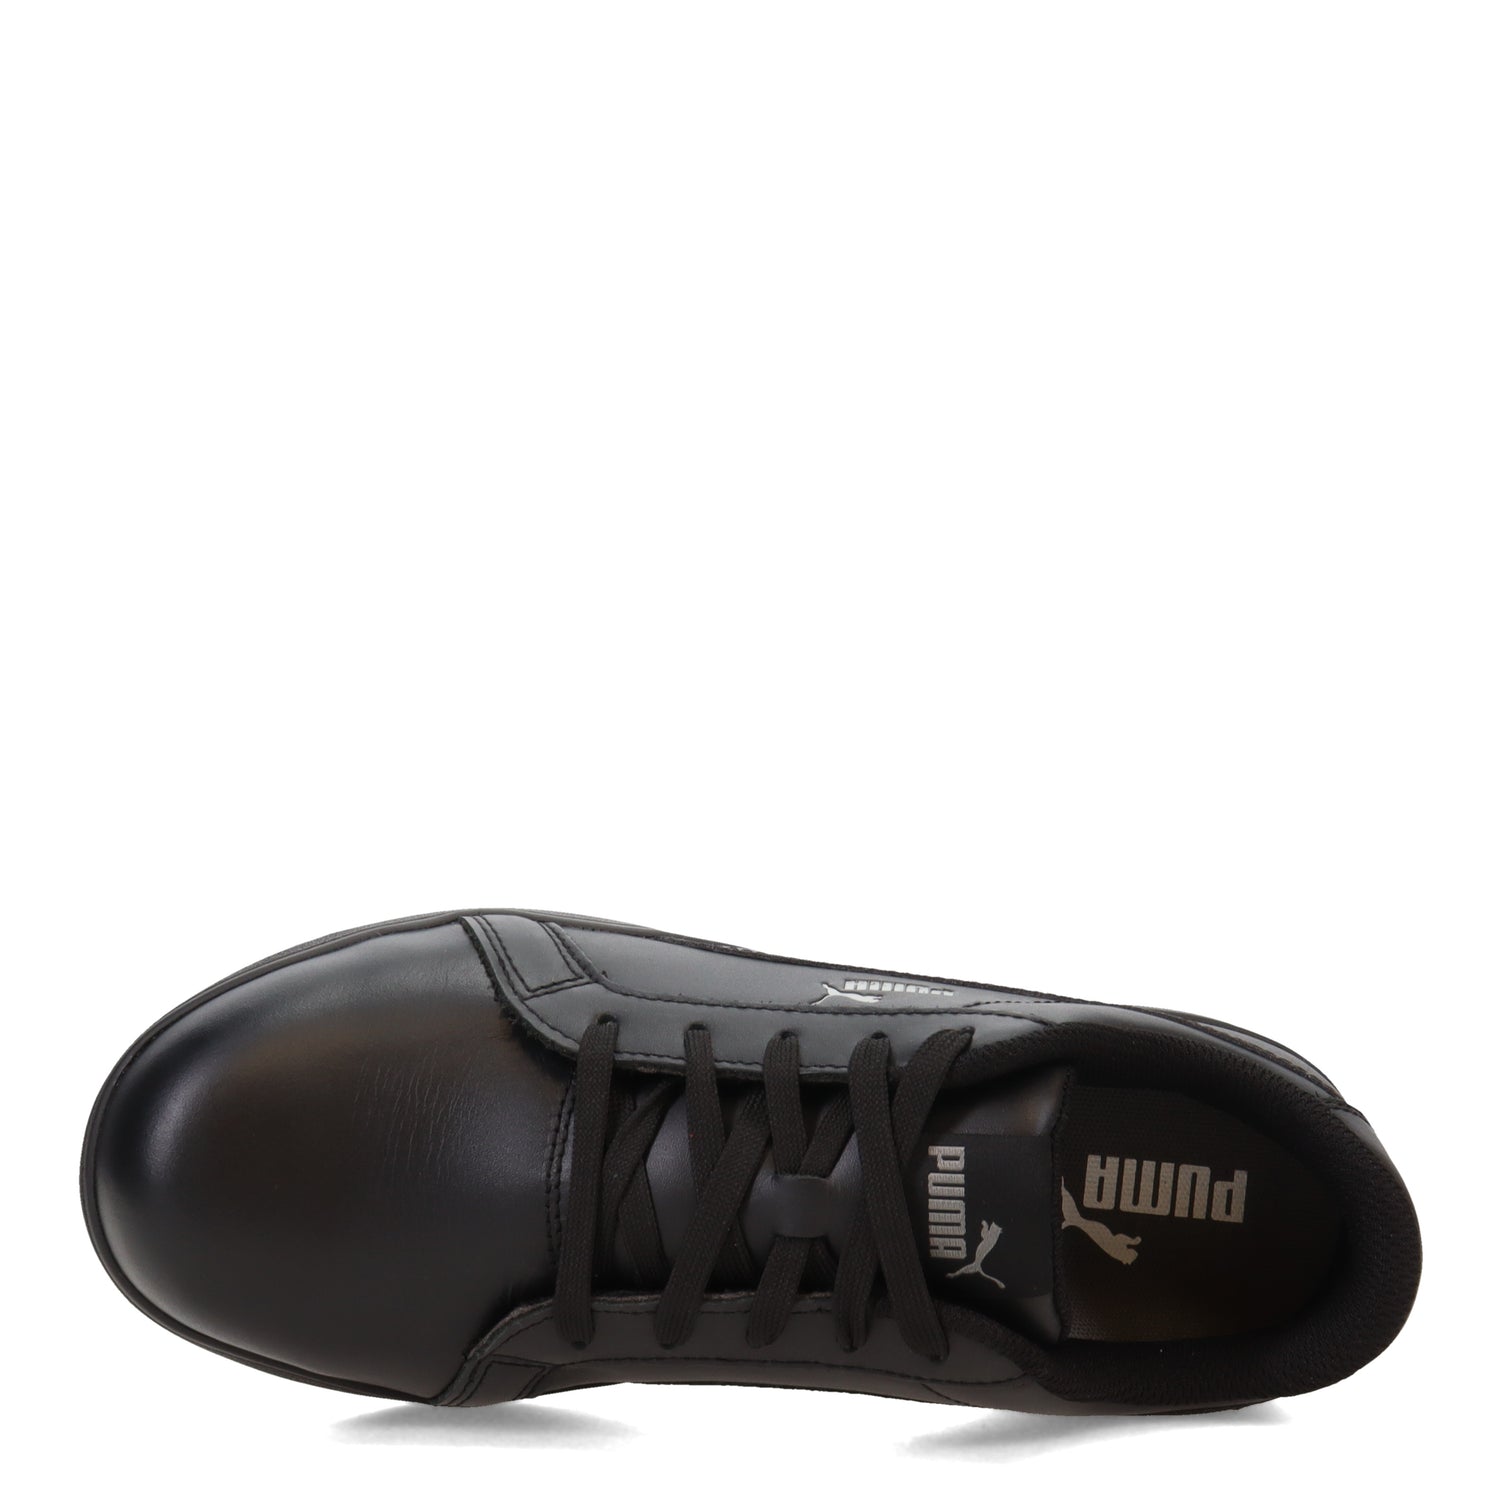 Peltz Shoes  Women's Puma Iconic Low SD CT Work Shoe BLACK 640105